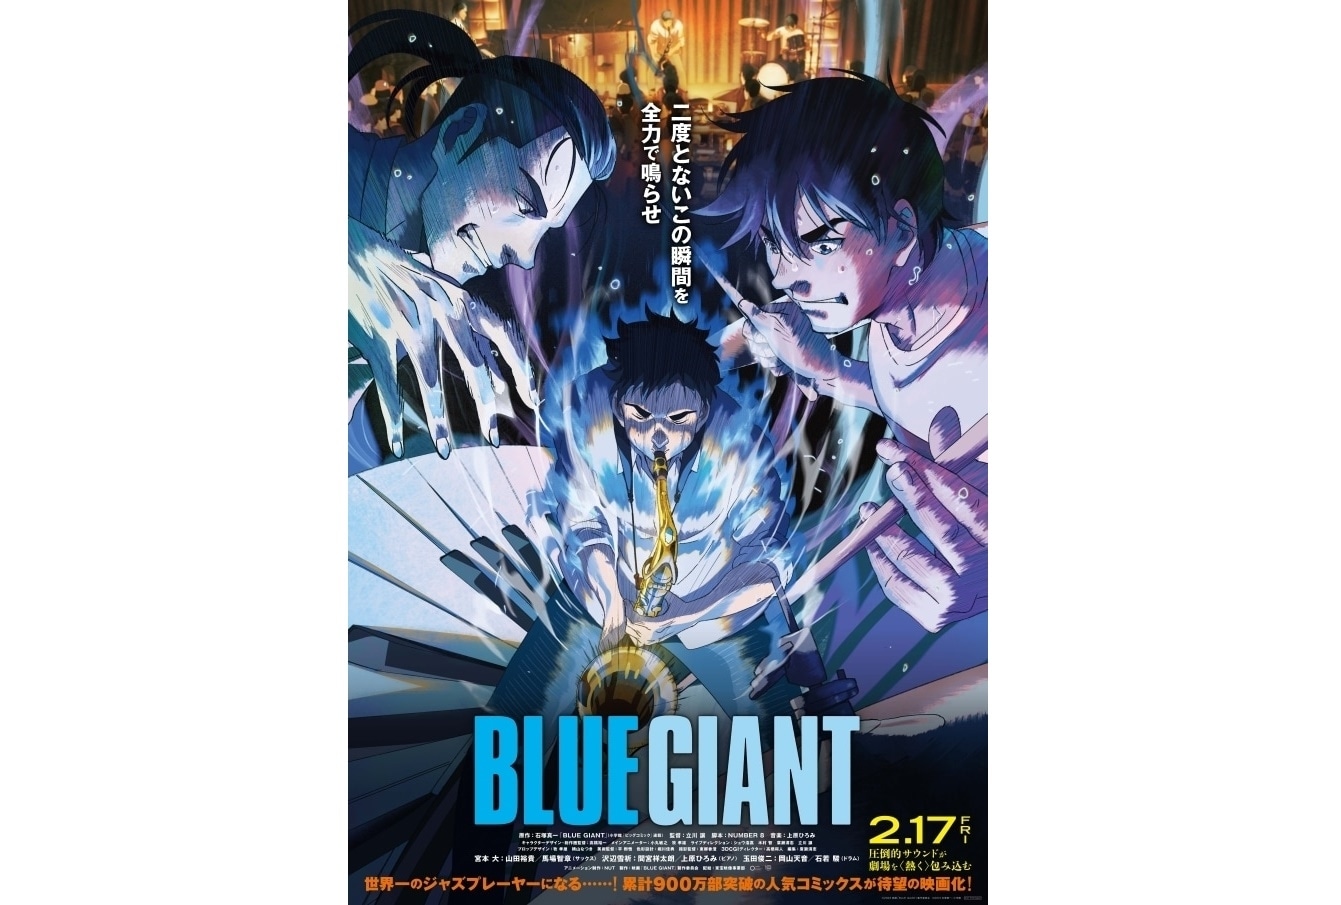 アニメ映画『BLUE GIANT』白熱のライブシーン解禁